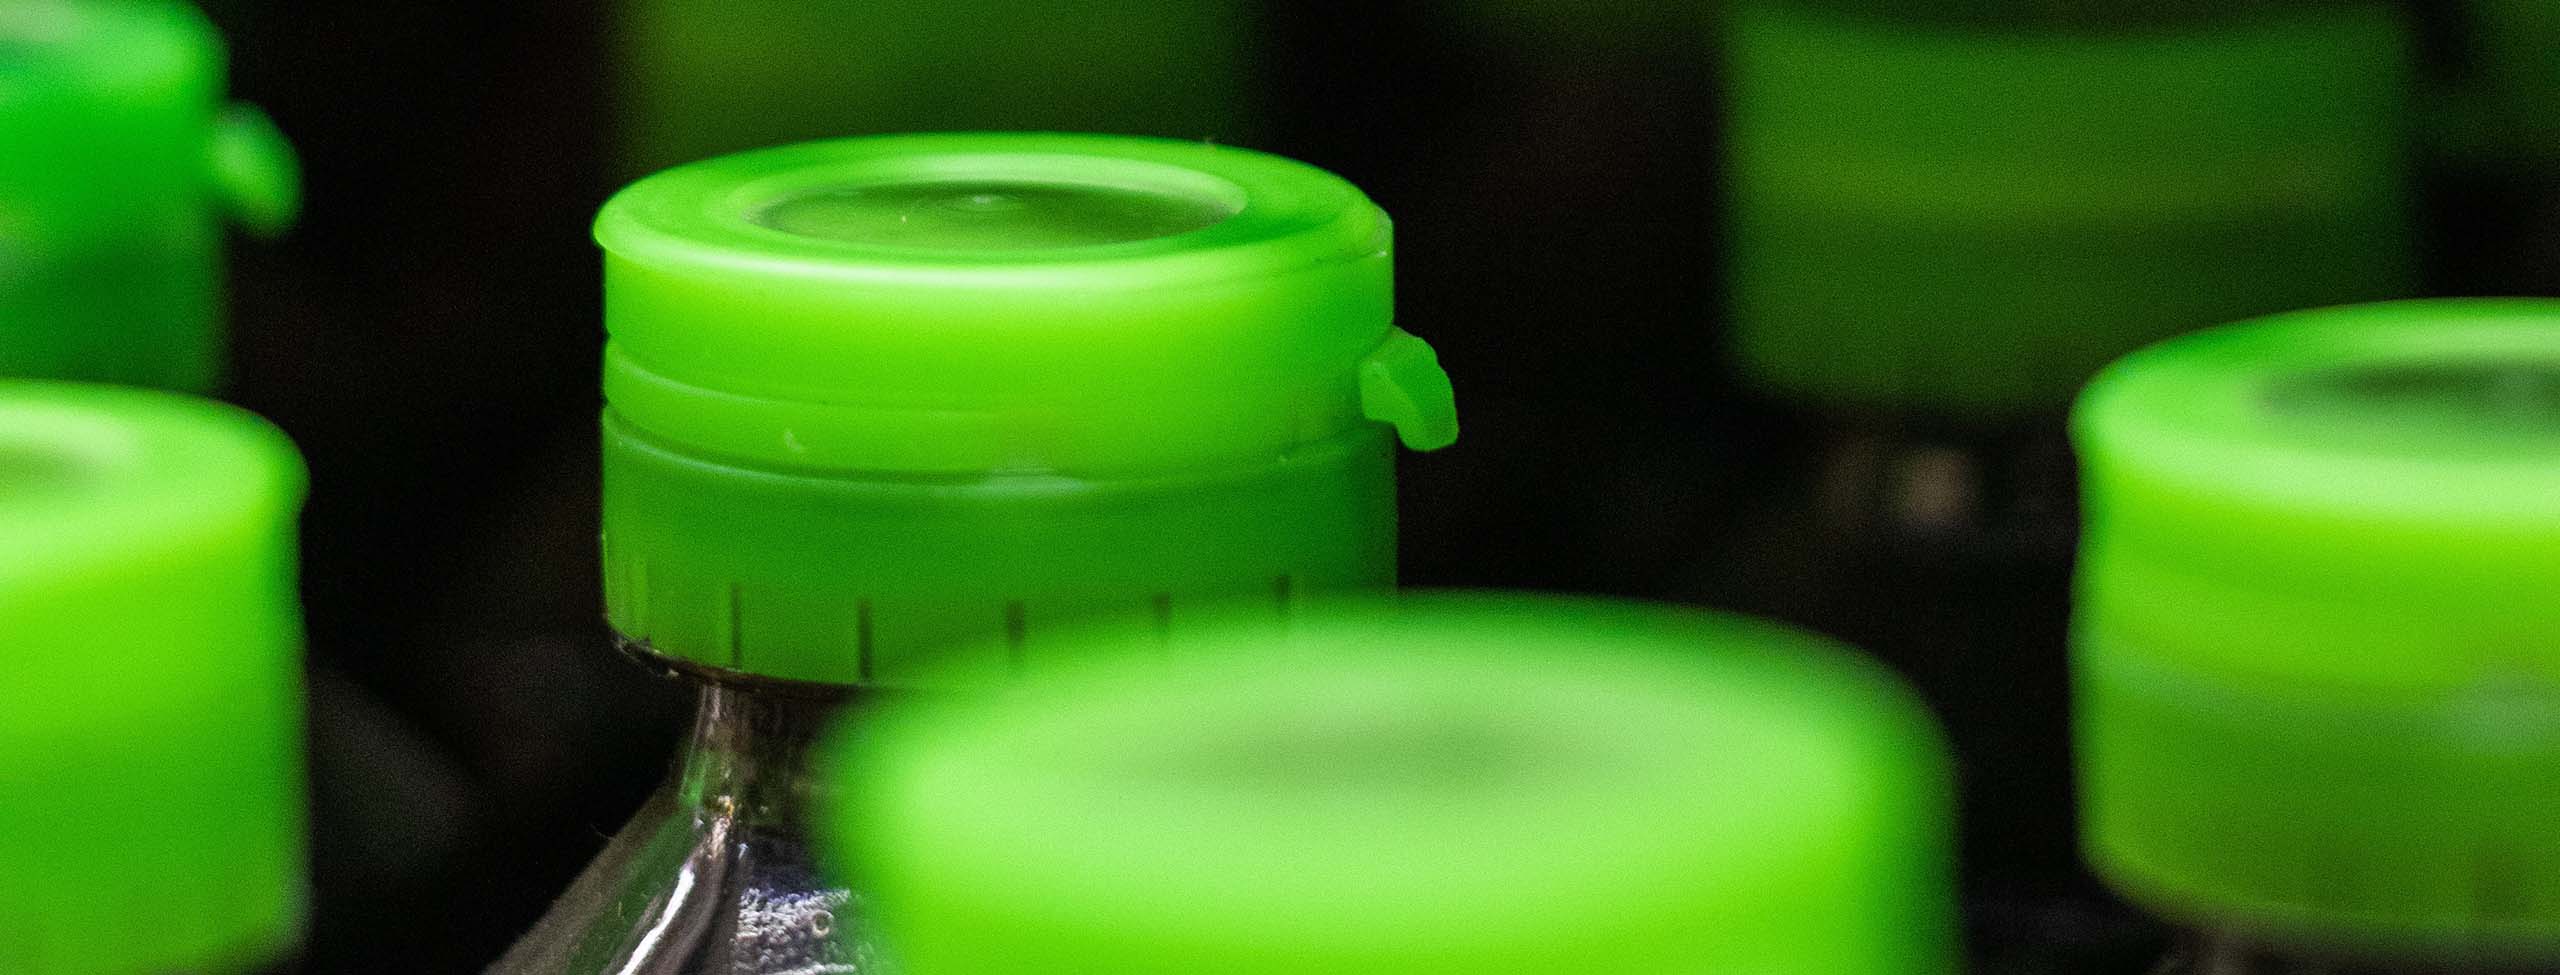 green bottle tops